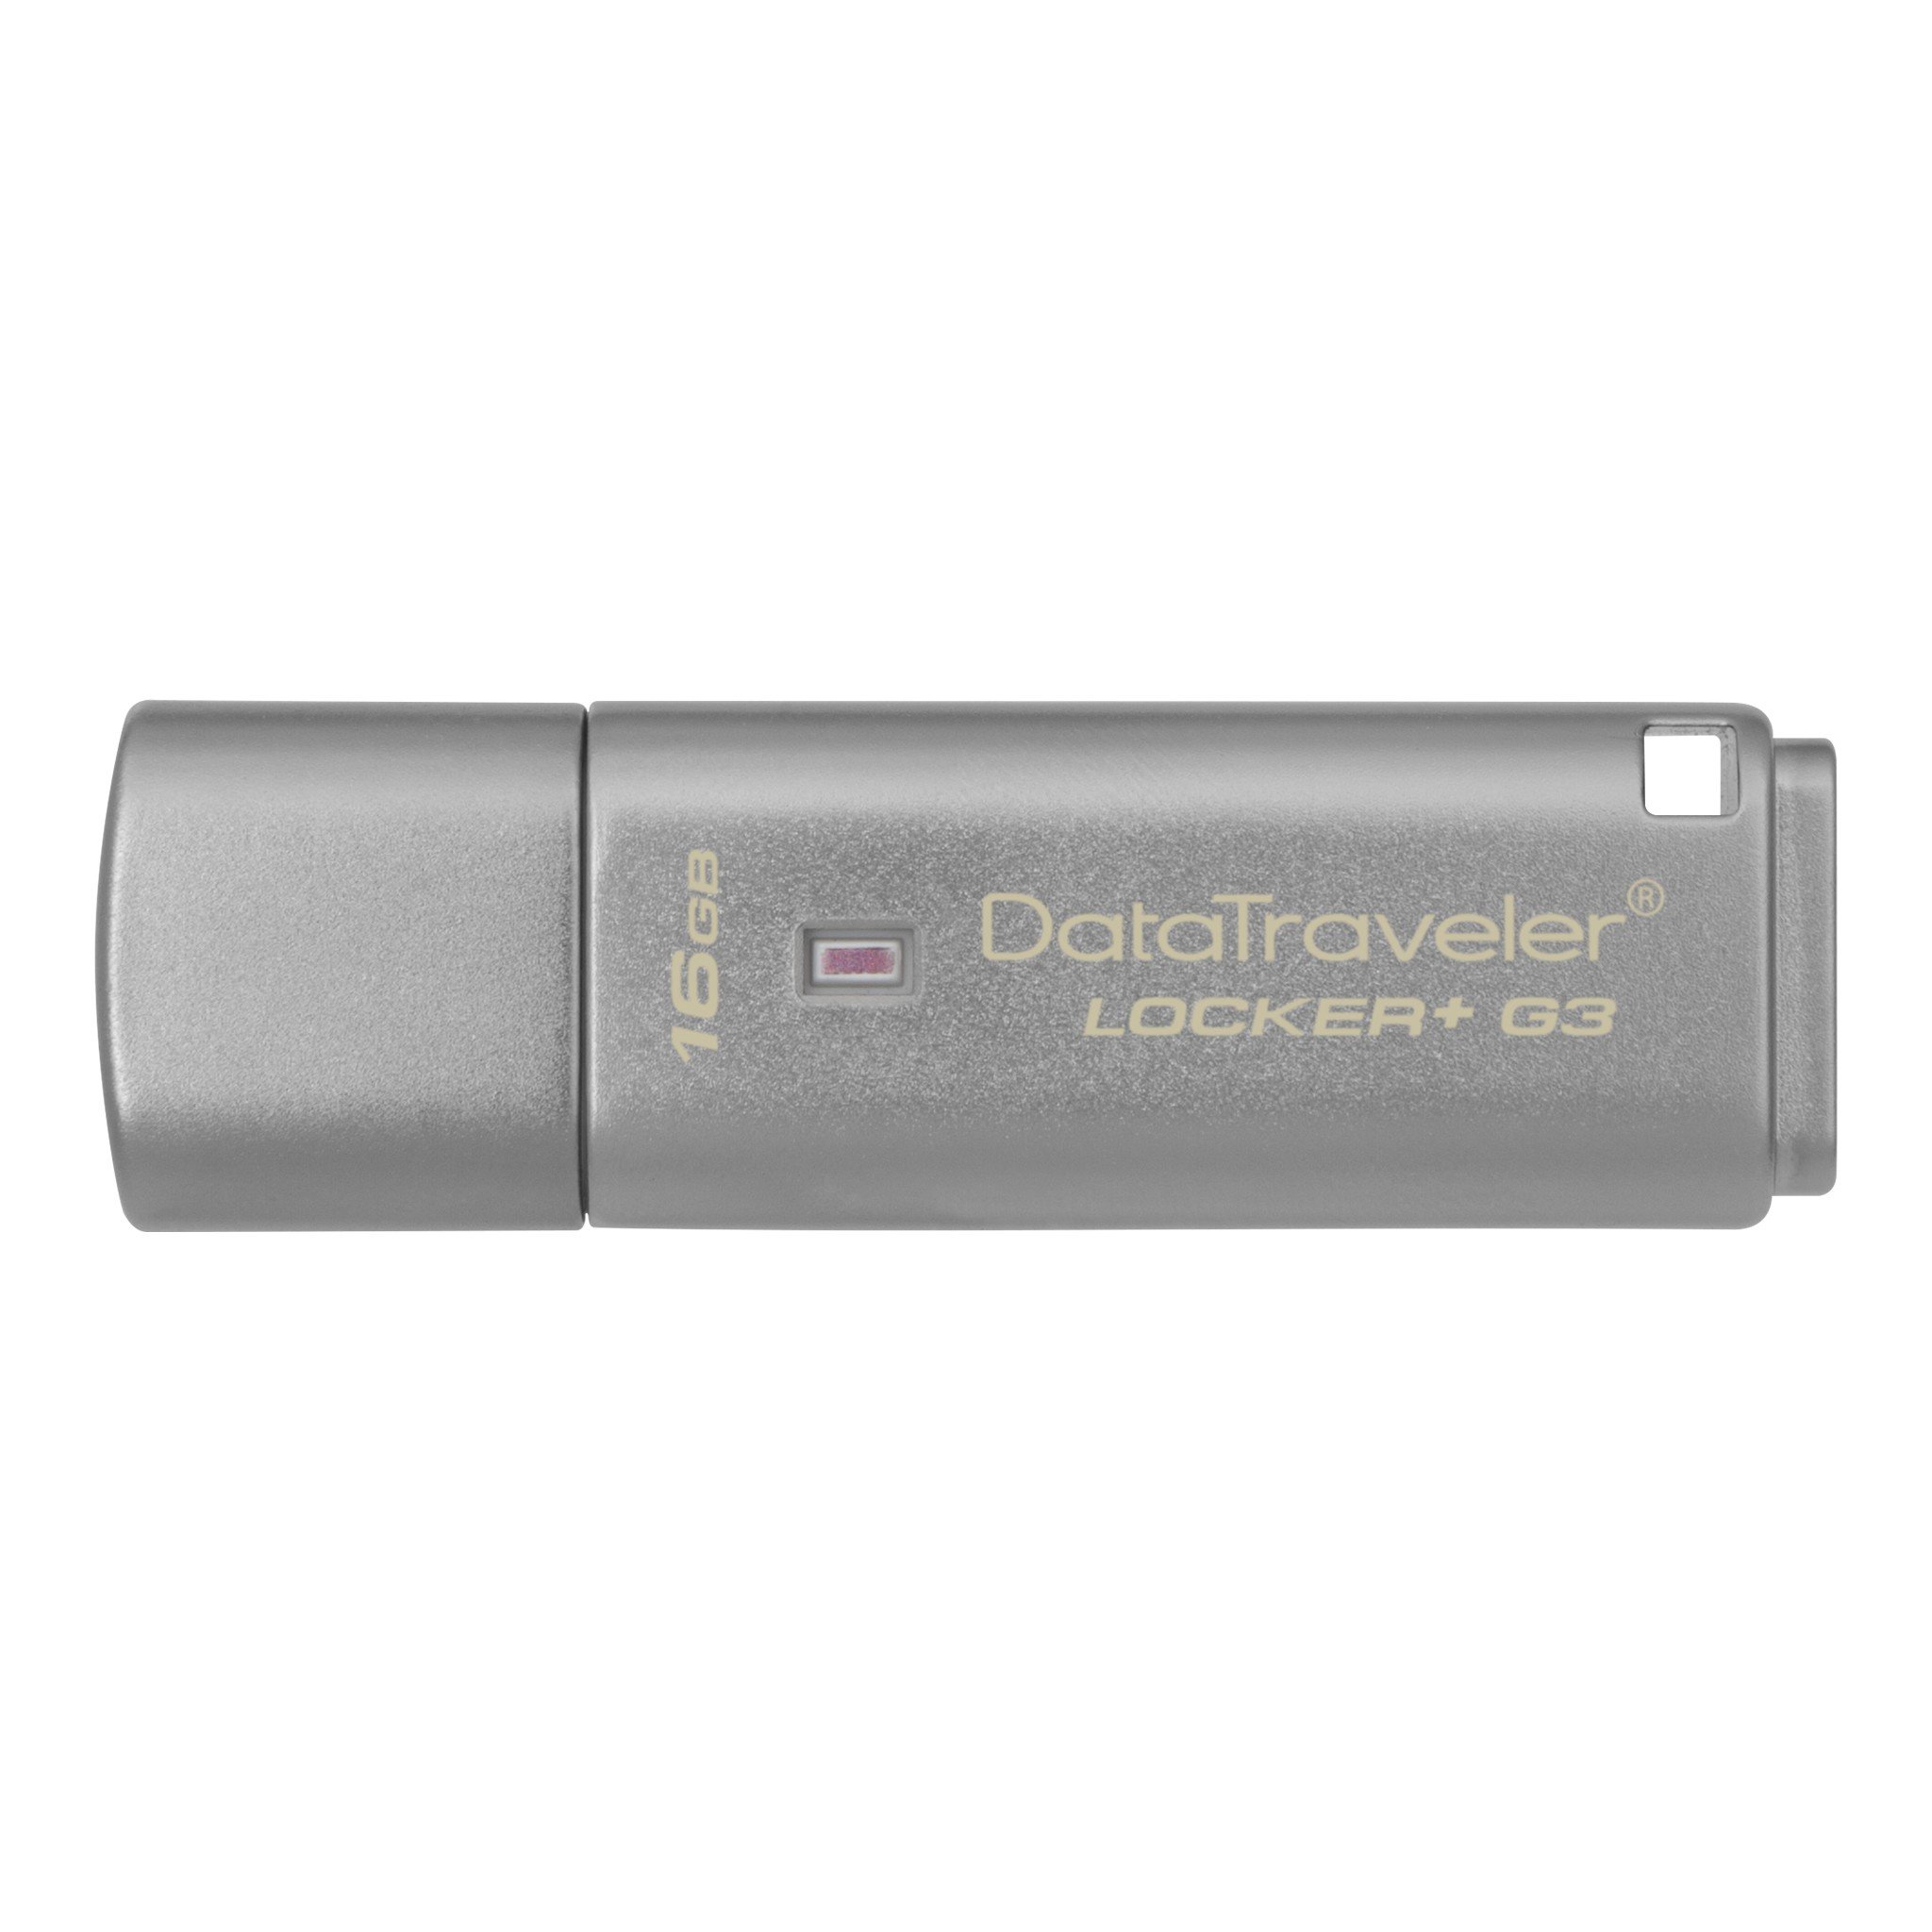 Pamięć Kingston 16GB DataTraveler Locker+ G3 USB 3.0 135MB/s DTLPG3/16GB szary widok od przodu na pendrive w poziomie